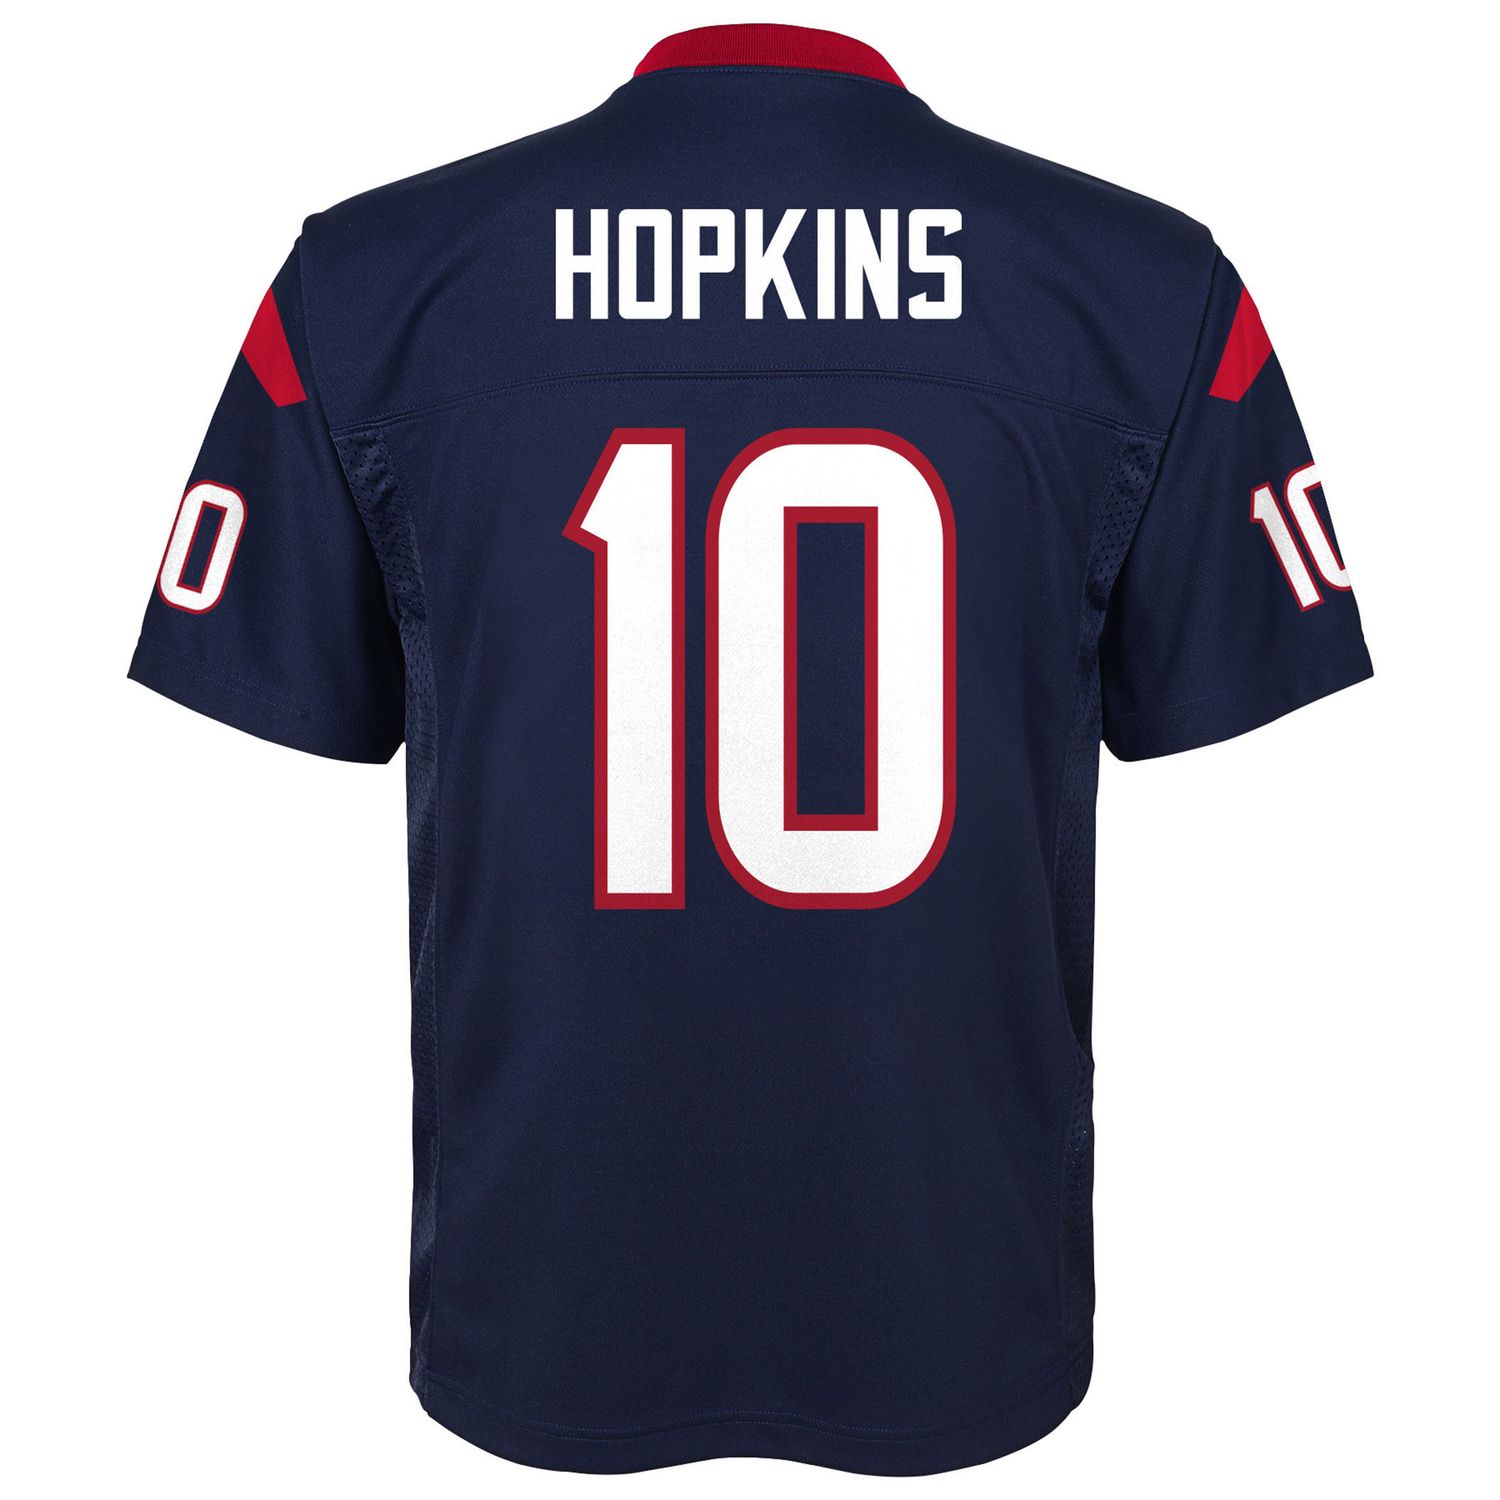 deandre hopkins jersey